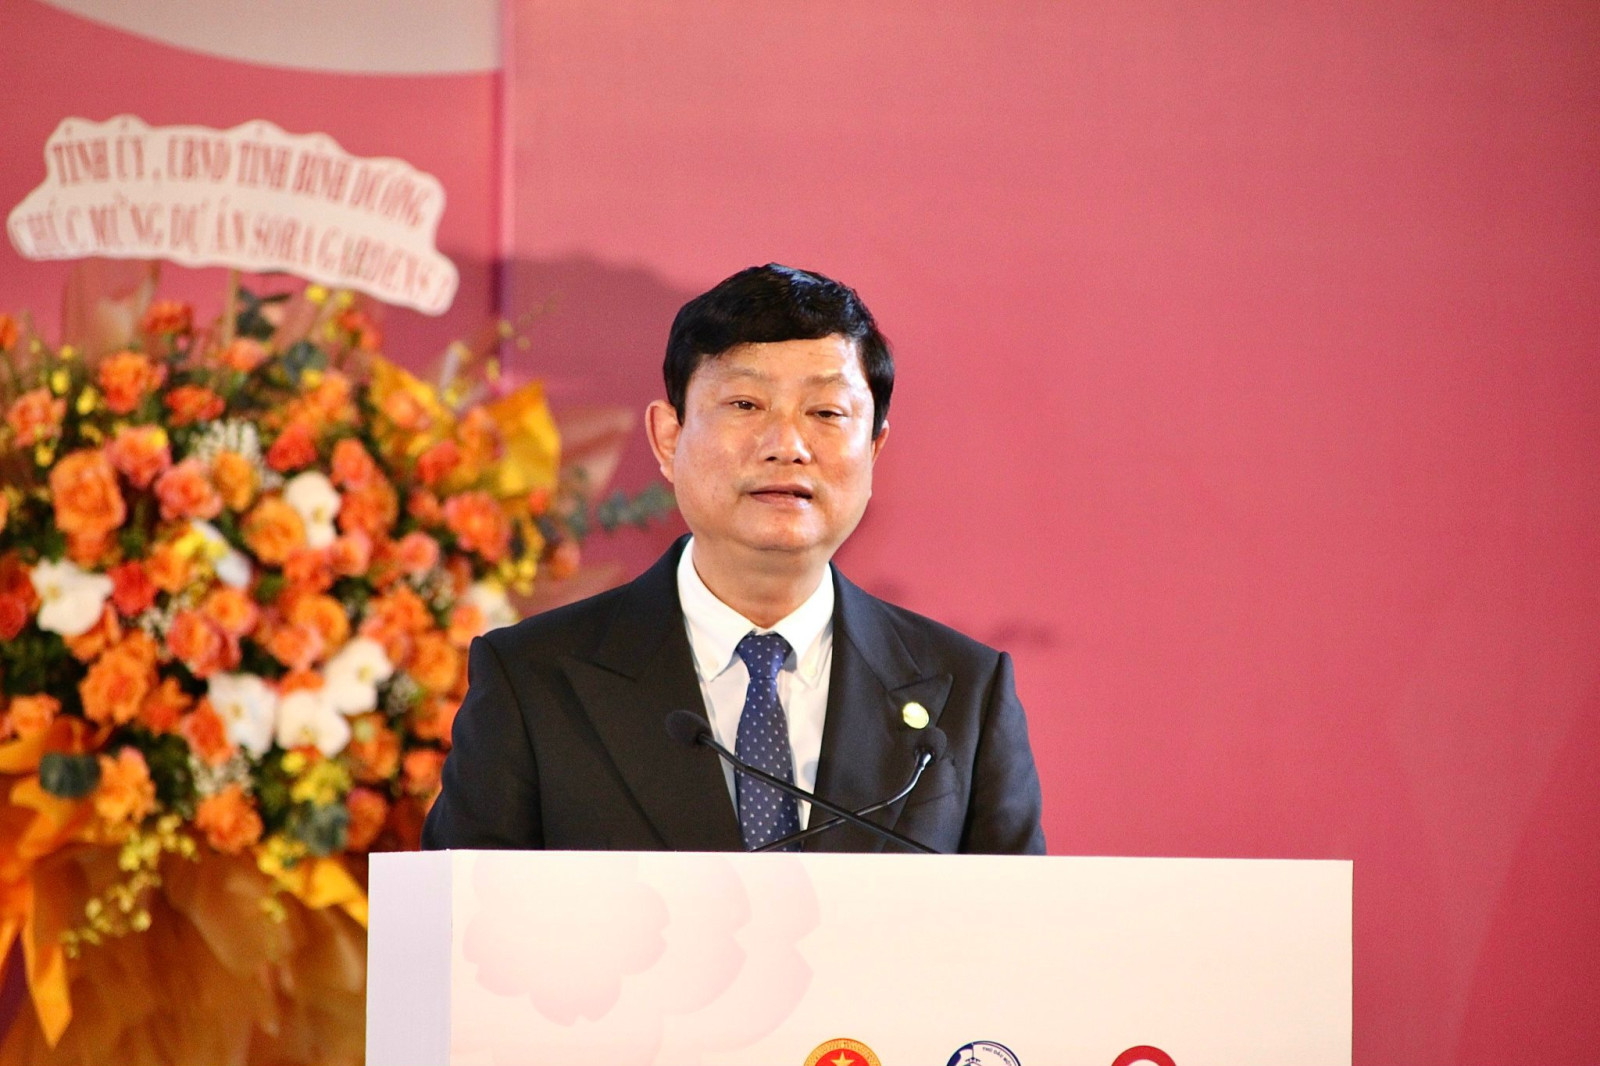 Đồng chí Võ Văn Minh - Chủ tịch UBND tỉnh Bình Dương phát biểu tại Sự kiện kiện 